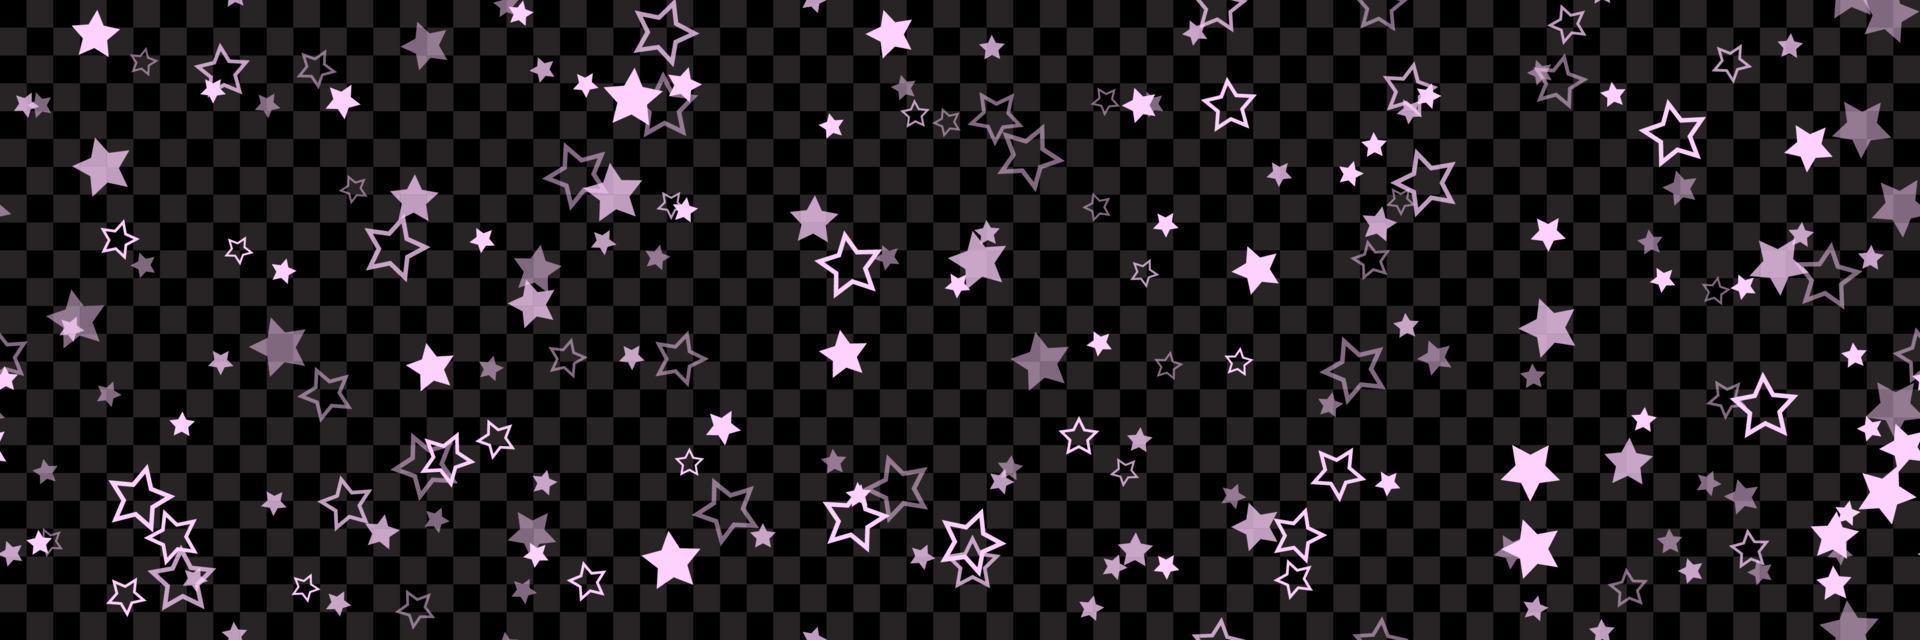 rosa stjärna mönster bakgrund för bred banner. sömlös stjärnor bakgrund. vektor illustration